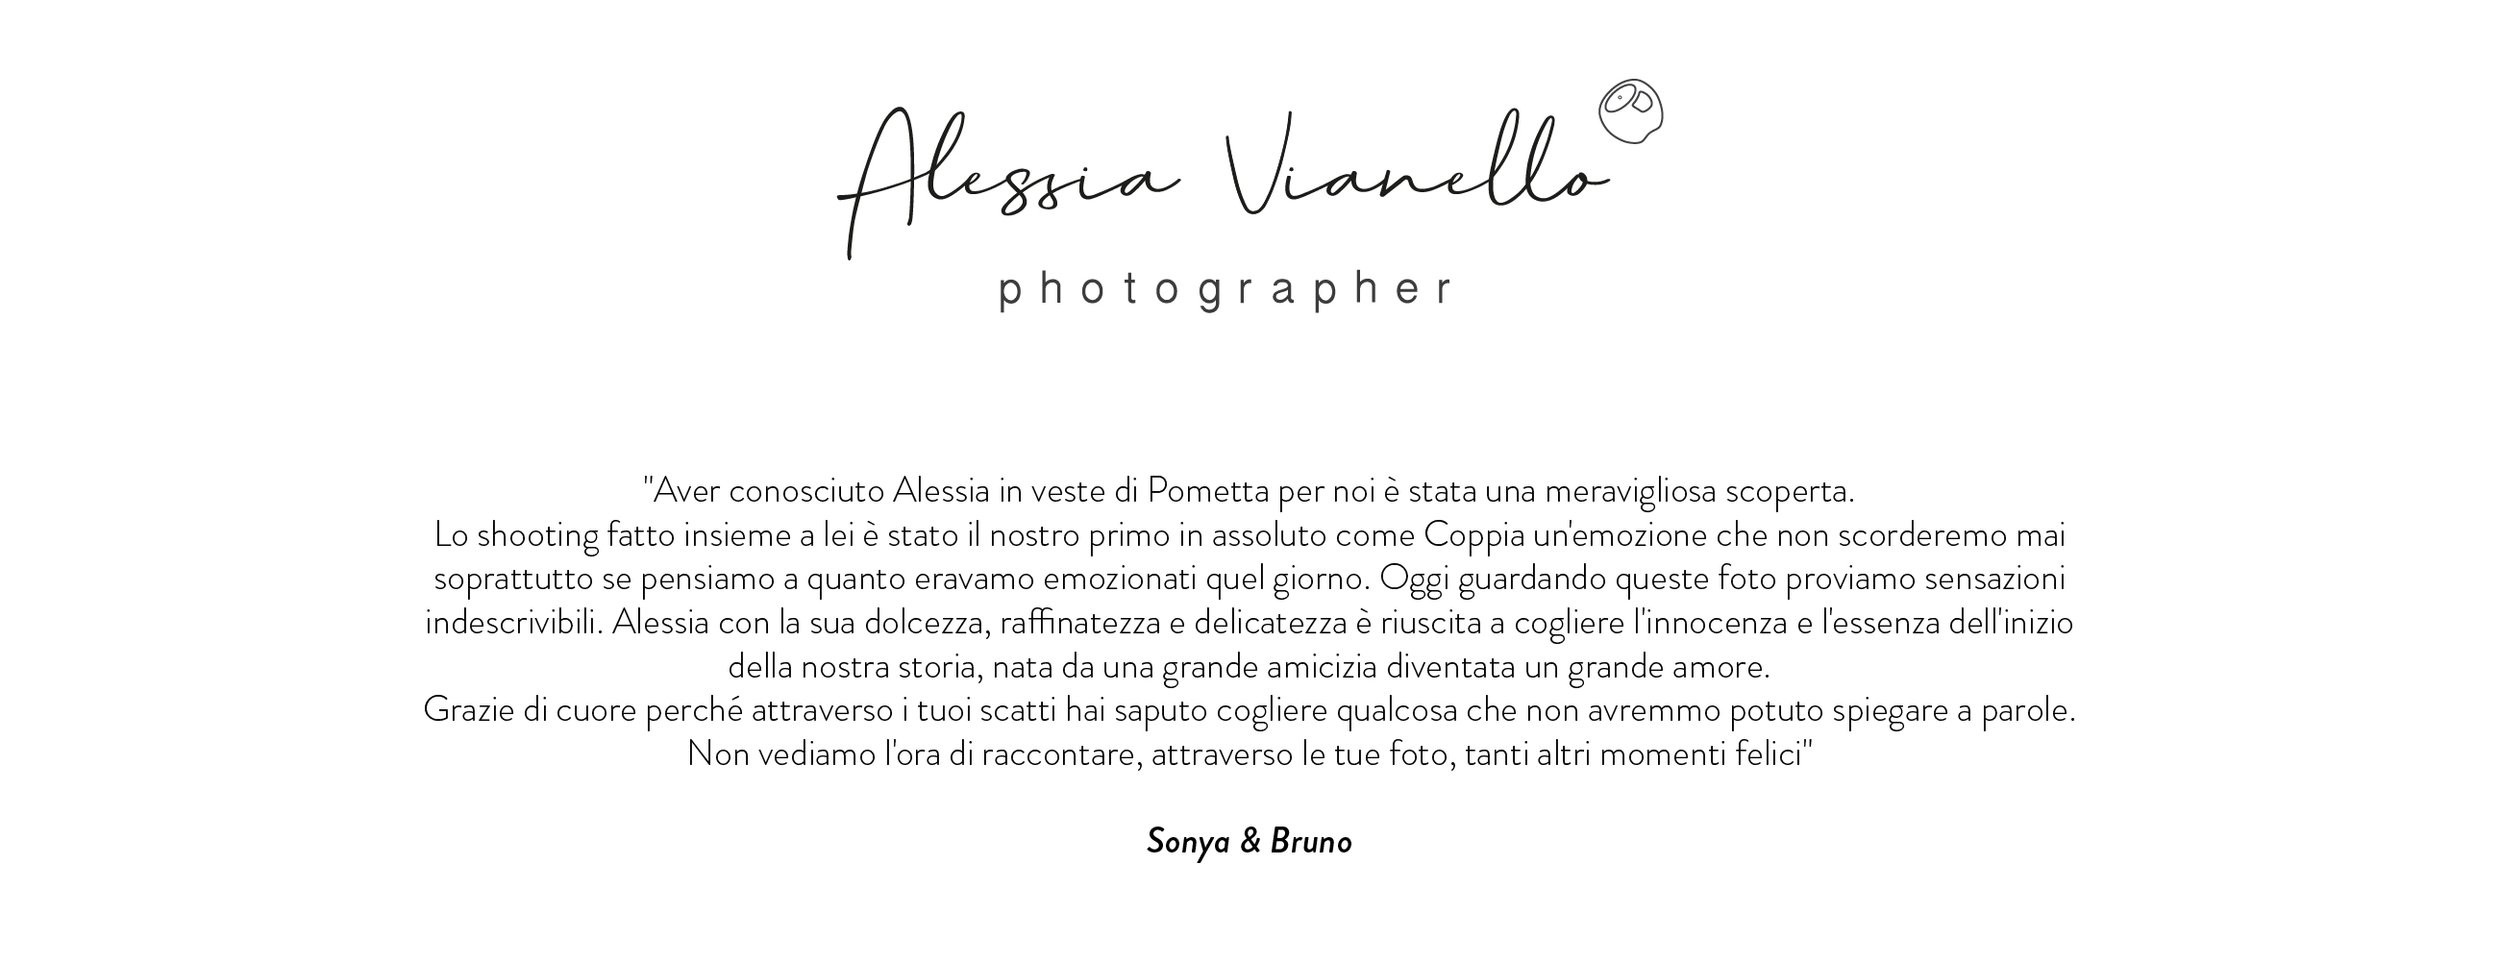 Alessia-Vianello_recensione-sonya-bruno.jpg